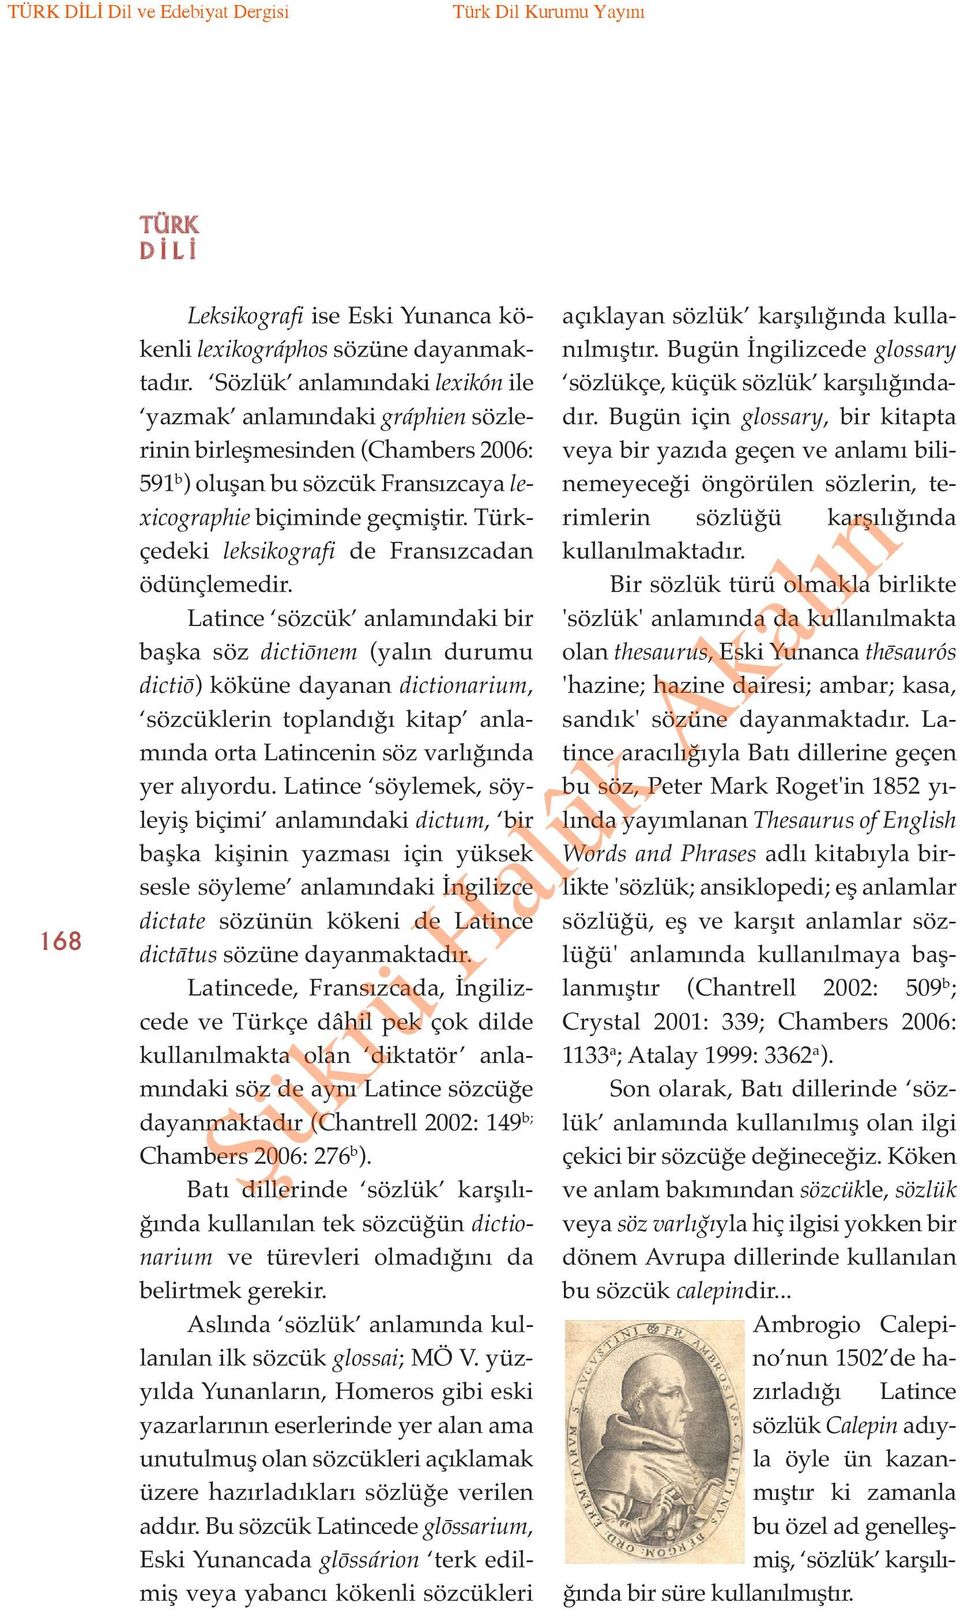 Türkçedeki leksikografi de Fransızcadan ödünçlemedir.